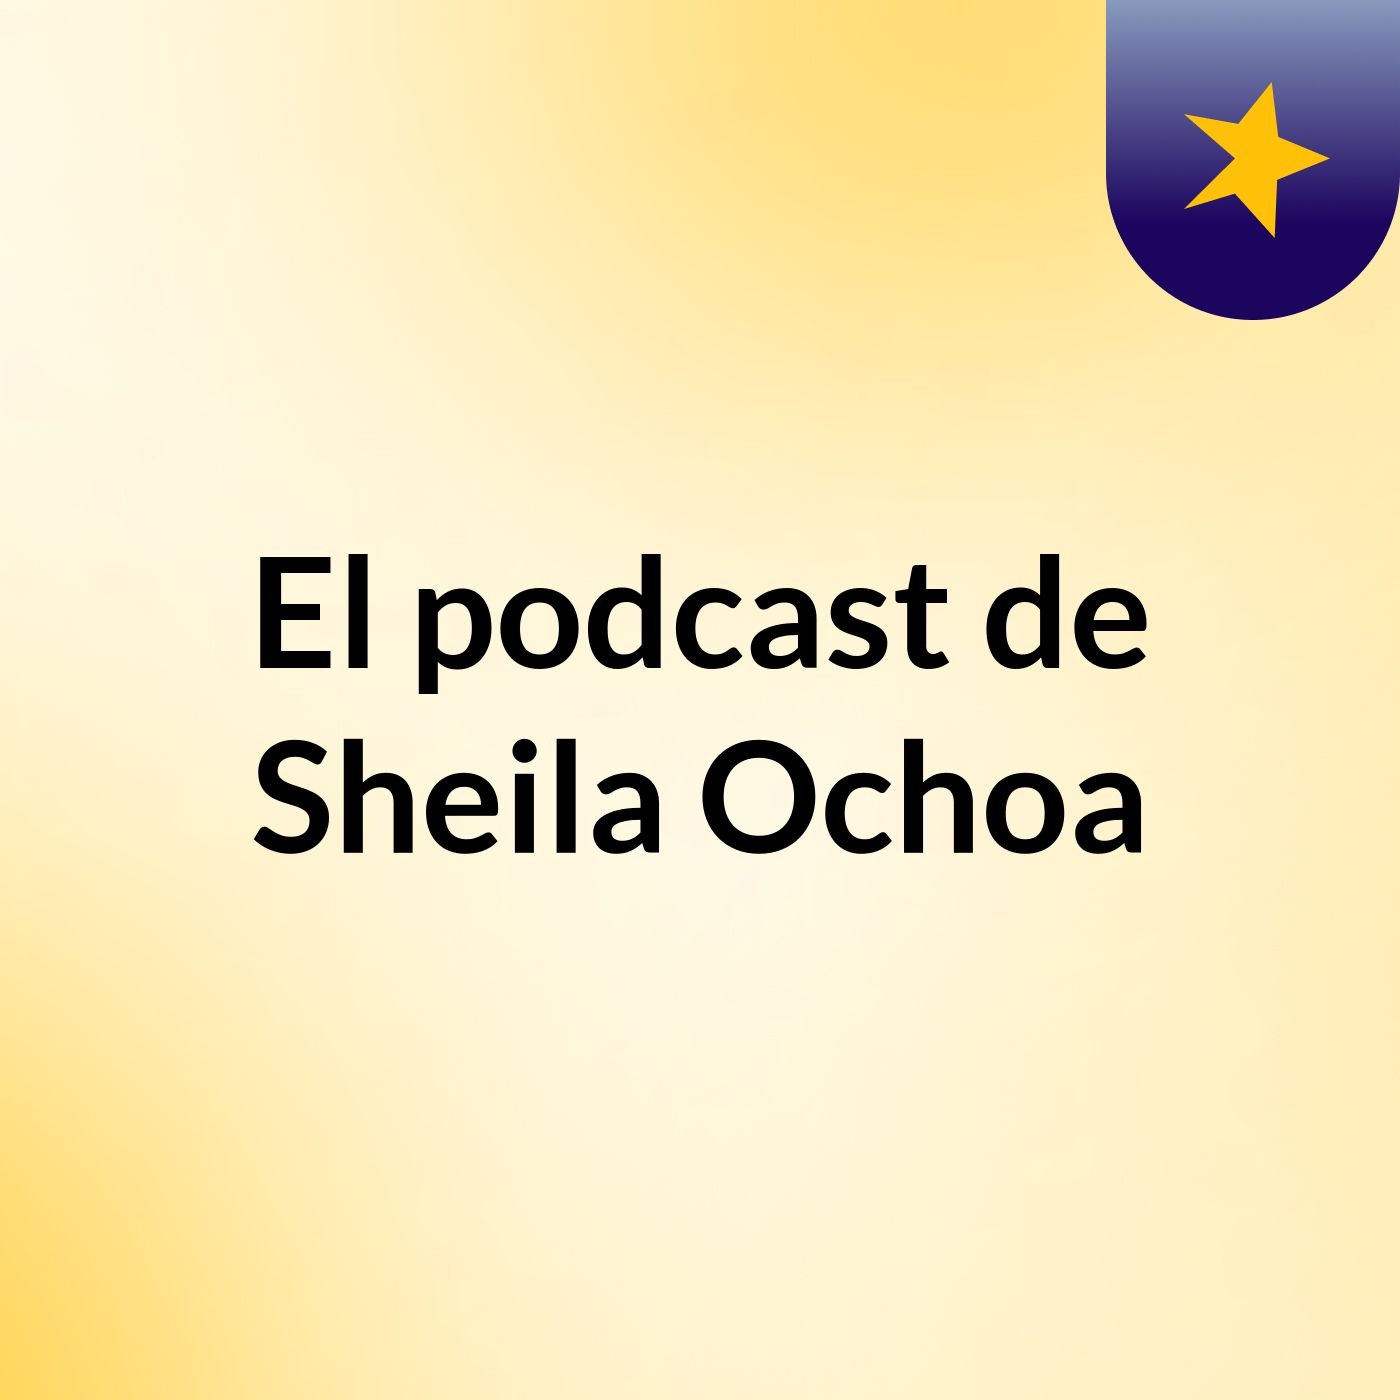 El podcast de Sheila Ochoa